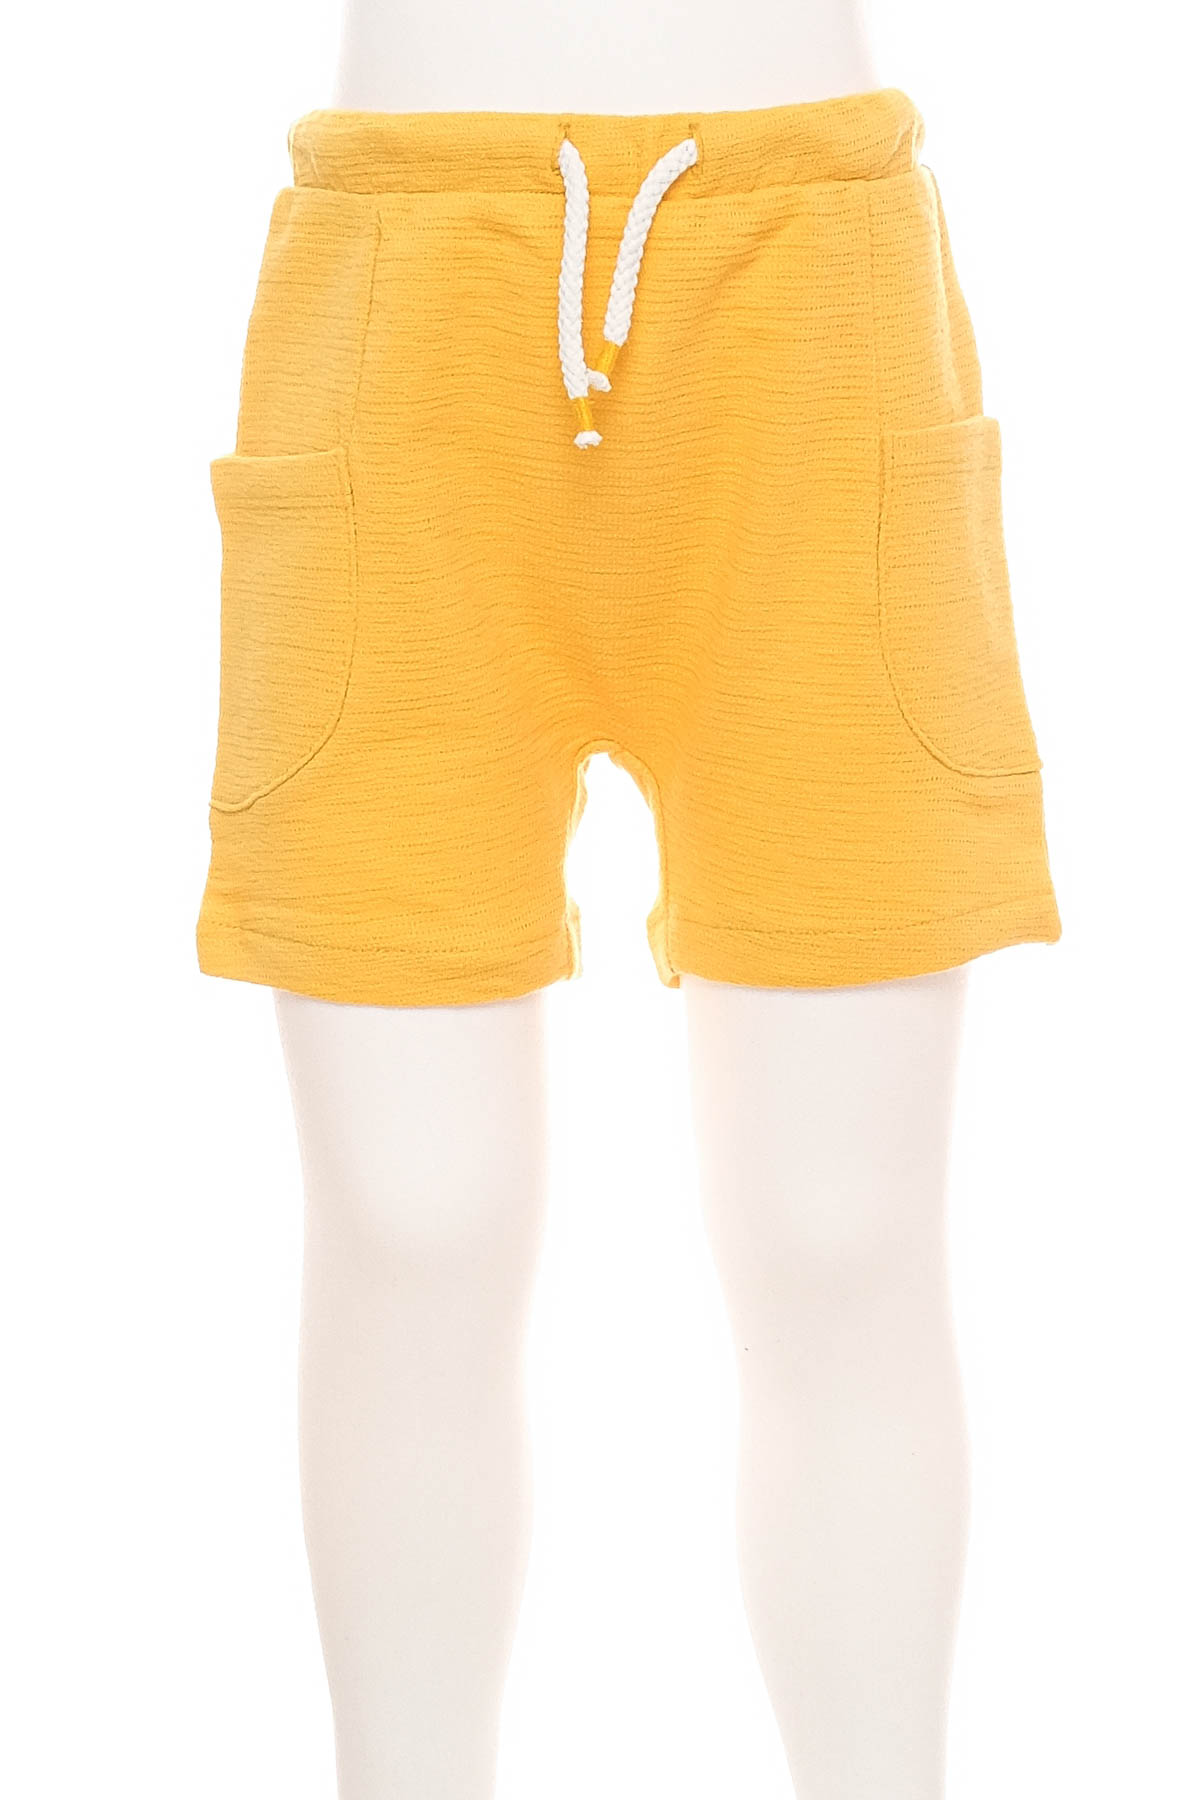 Spodnie niemowlęce dla chłopca - Fagottino by OVS - 0